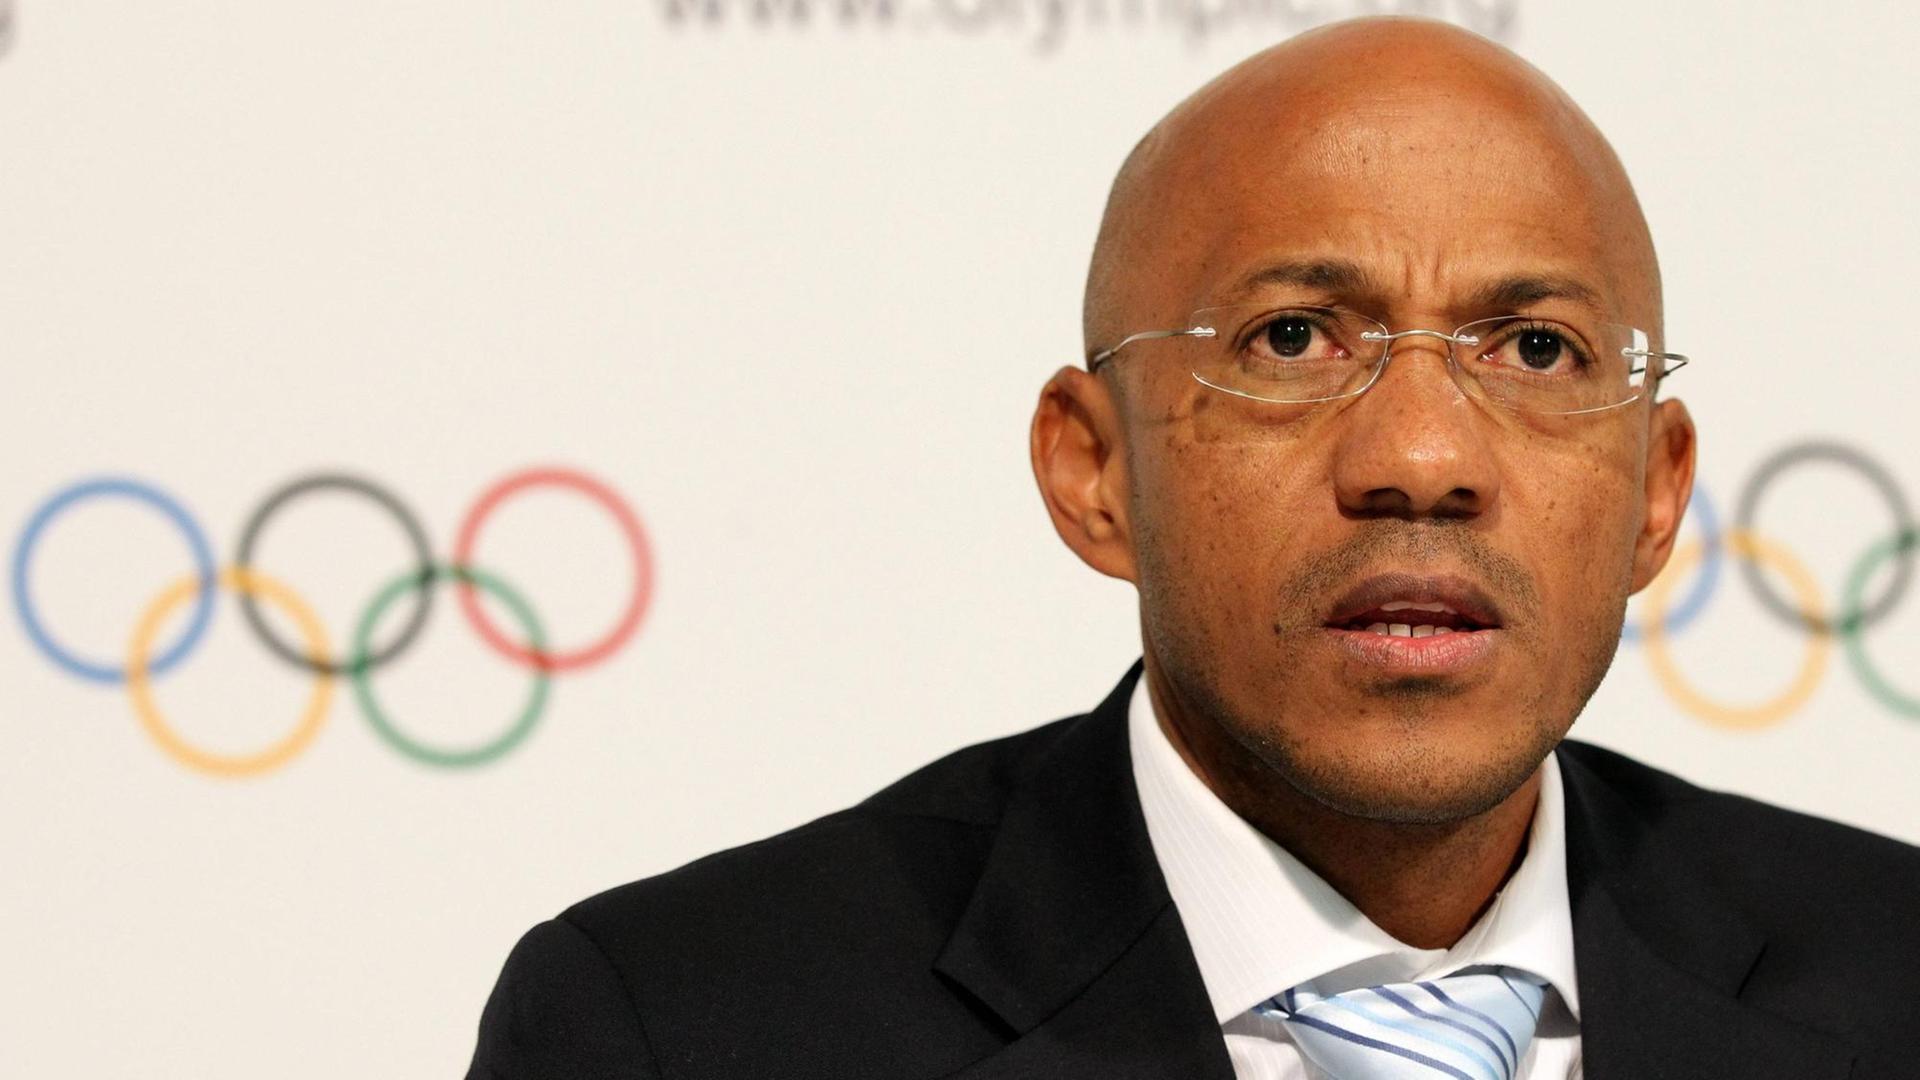 Der namibische Sportfunktionär und frühere Sprinter Frankie Fredericks gibt sein Amt als IOC-Mitglied auf.